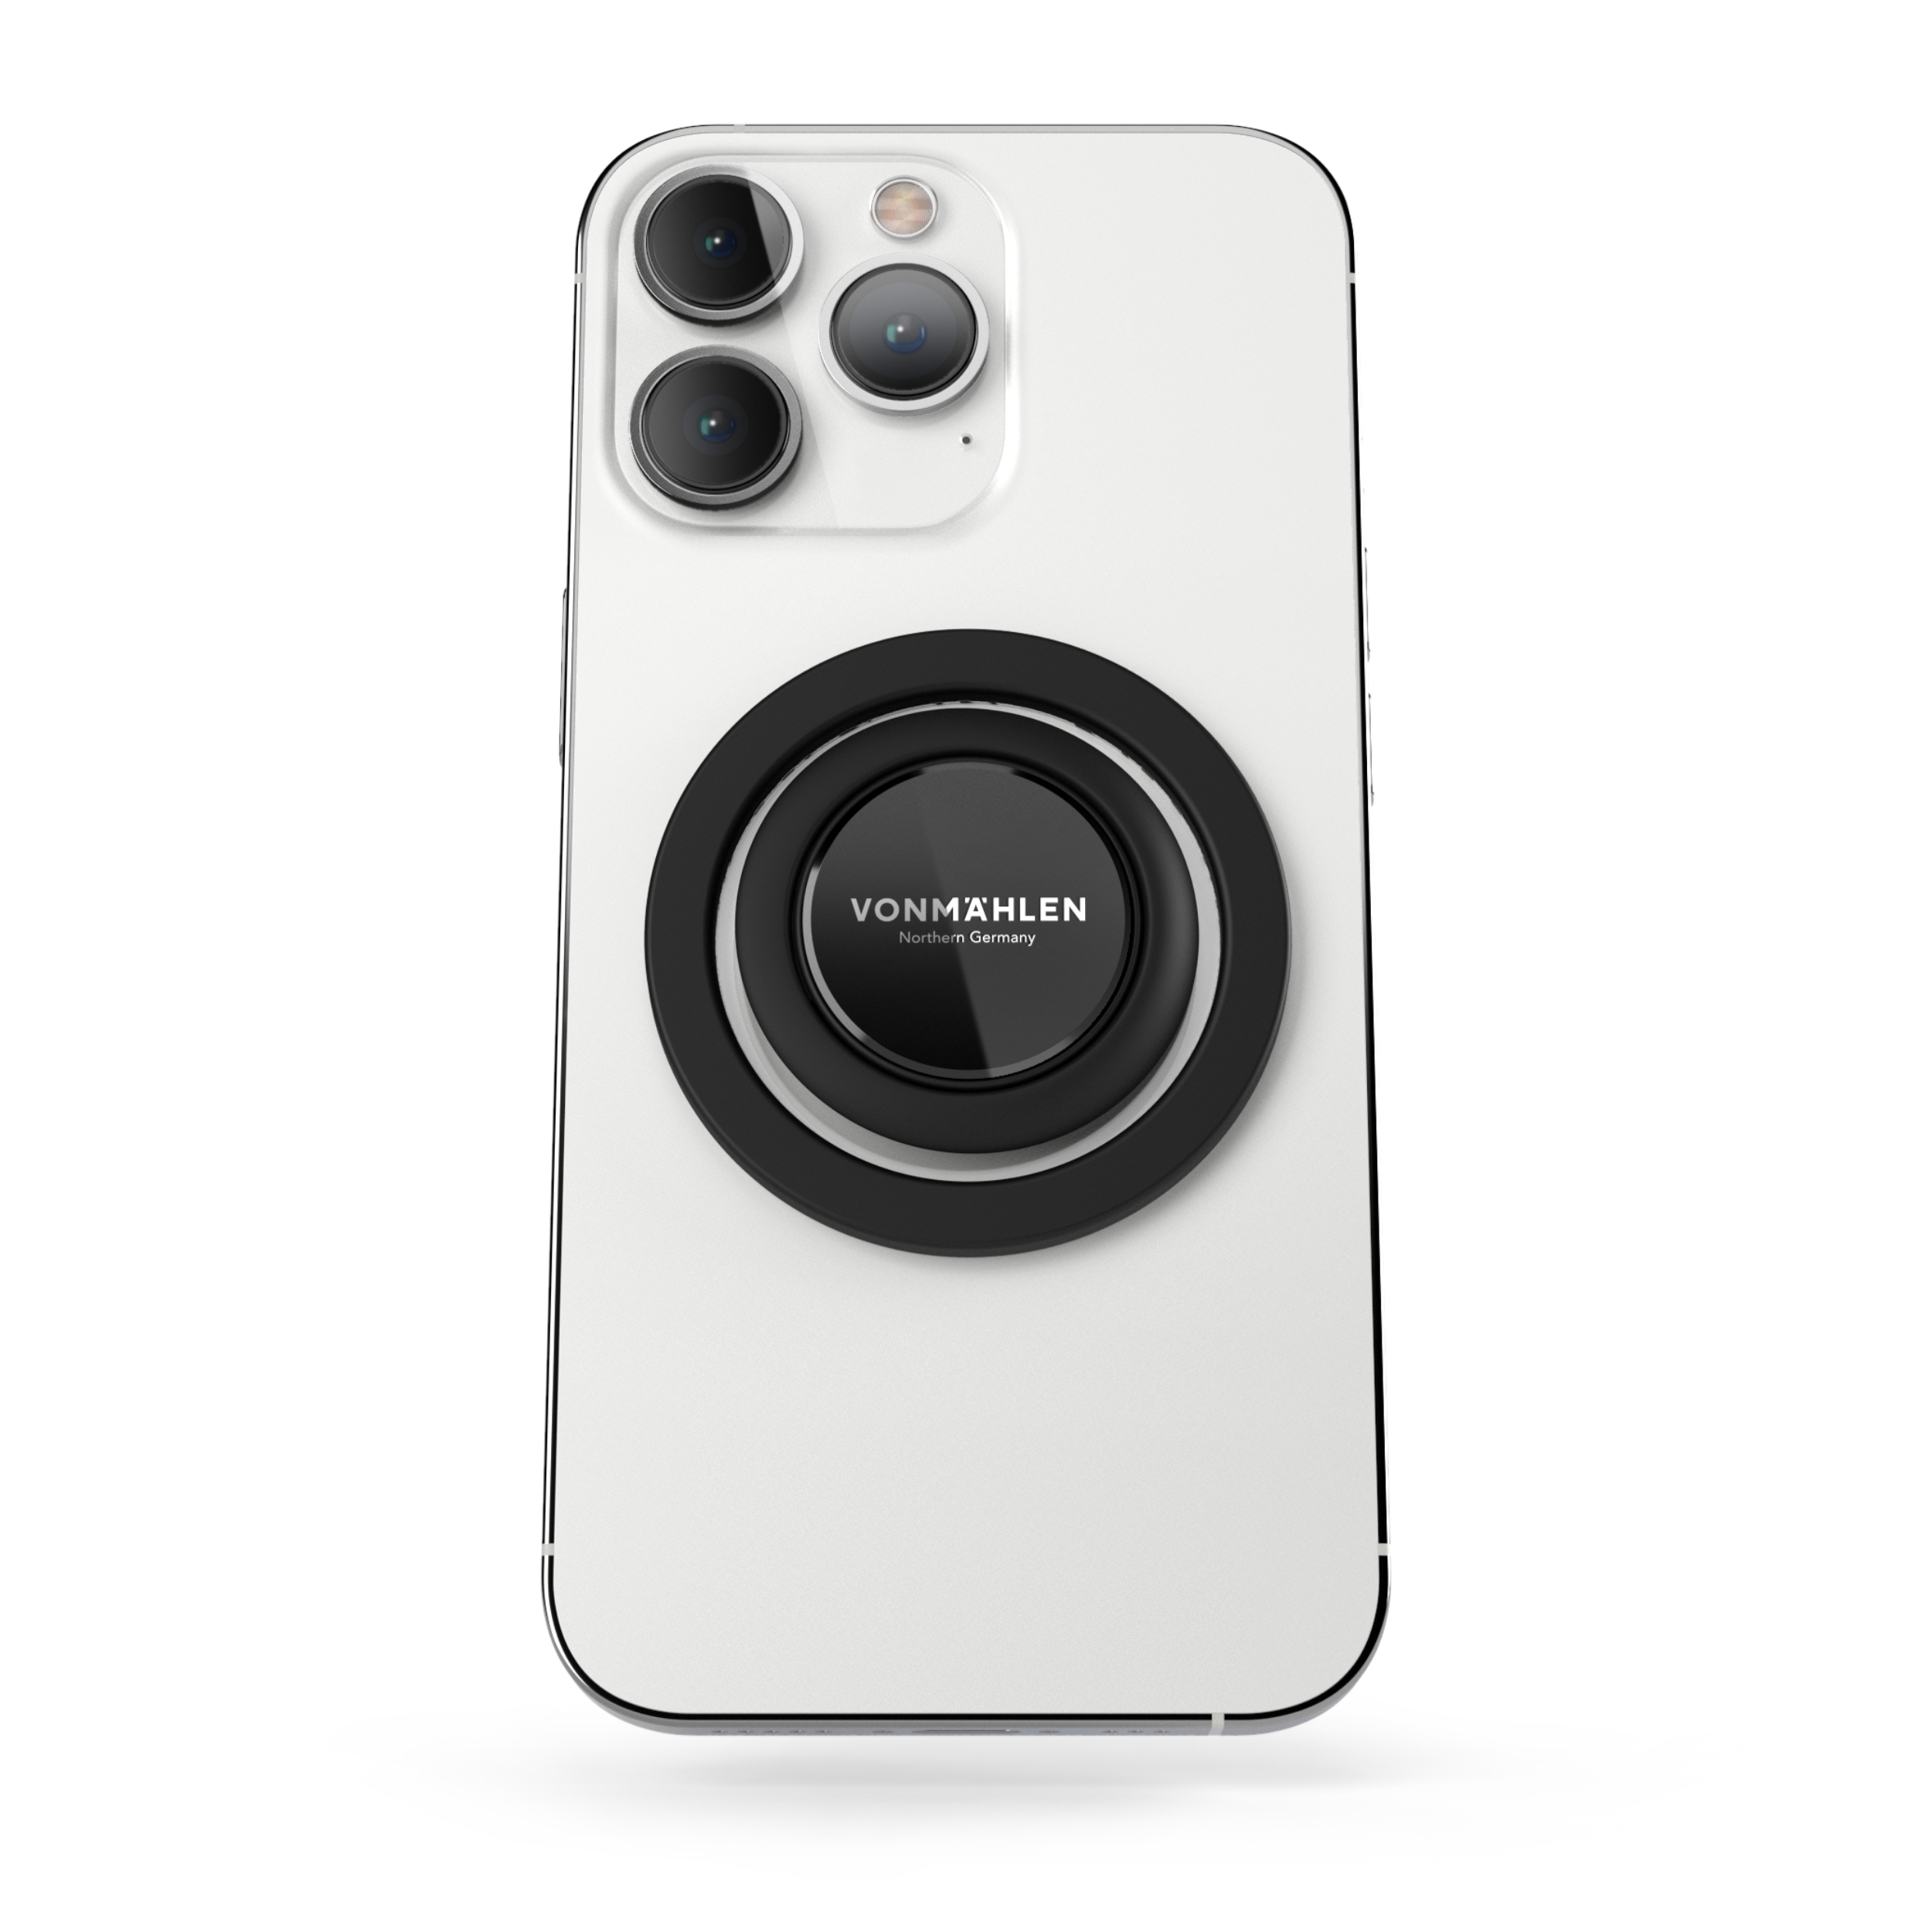 Vonmaehlen Backflip MagSafe Compatible Phone Grip/Holder - Black